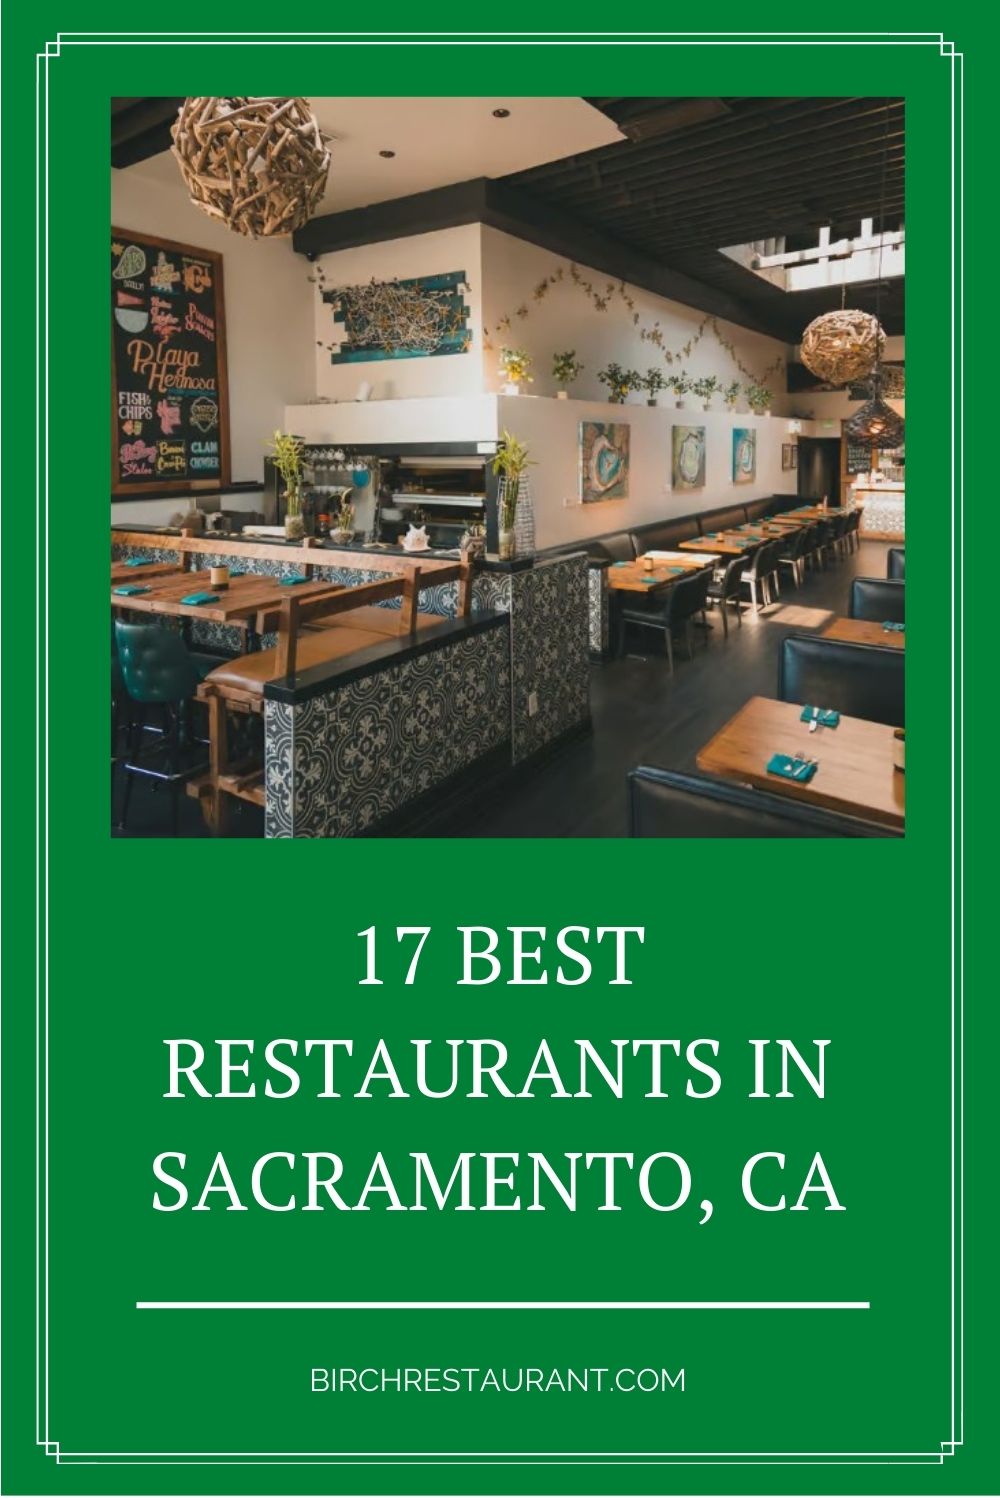 Best Restaurants in Sacramento